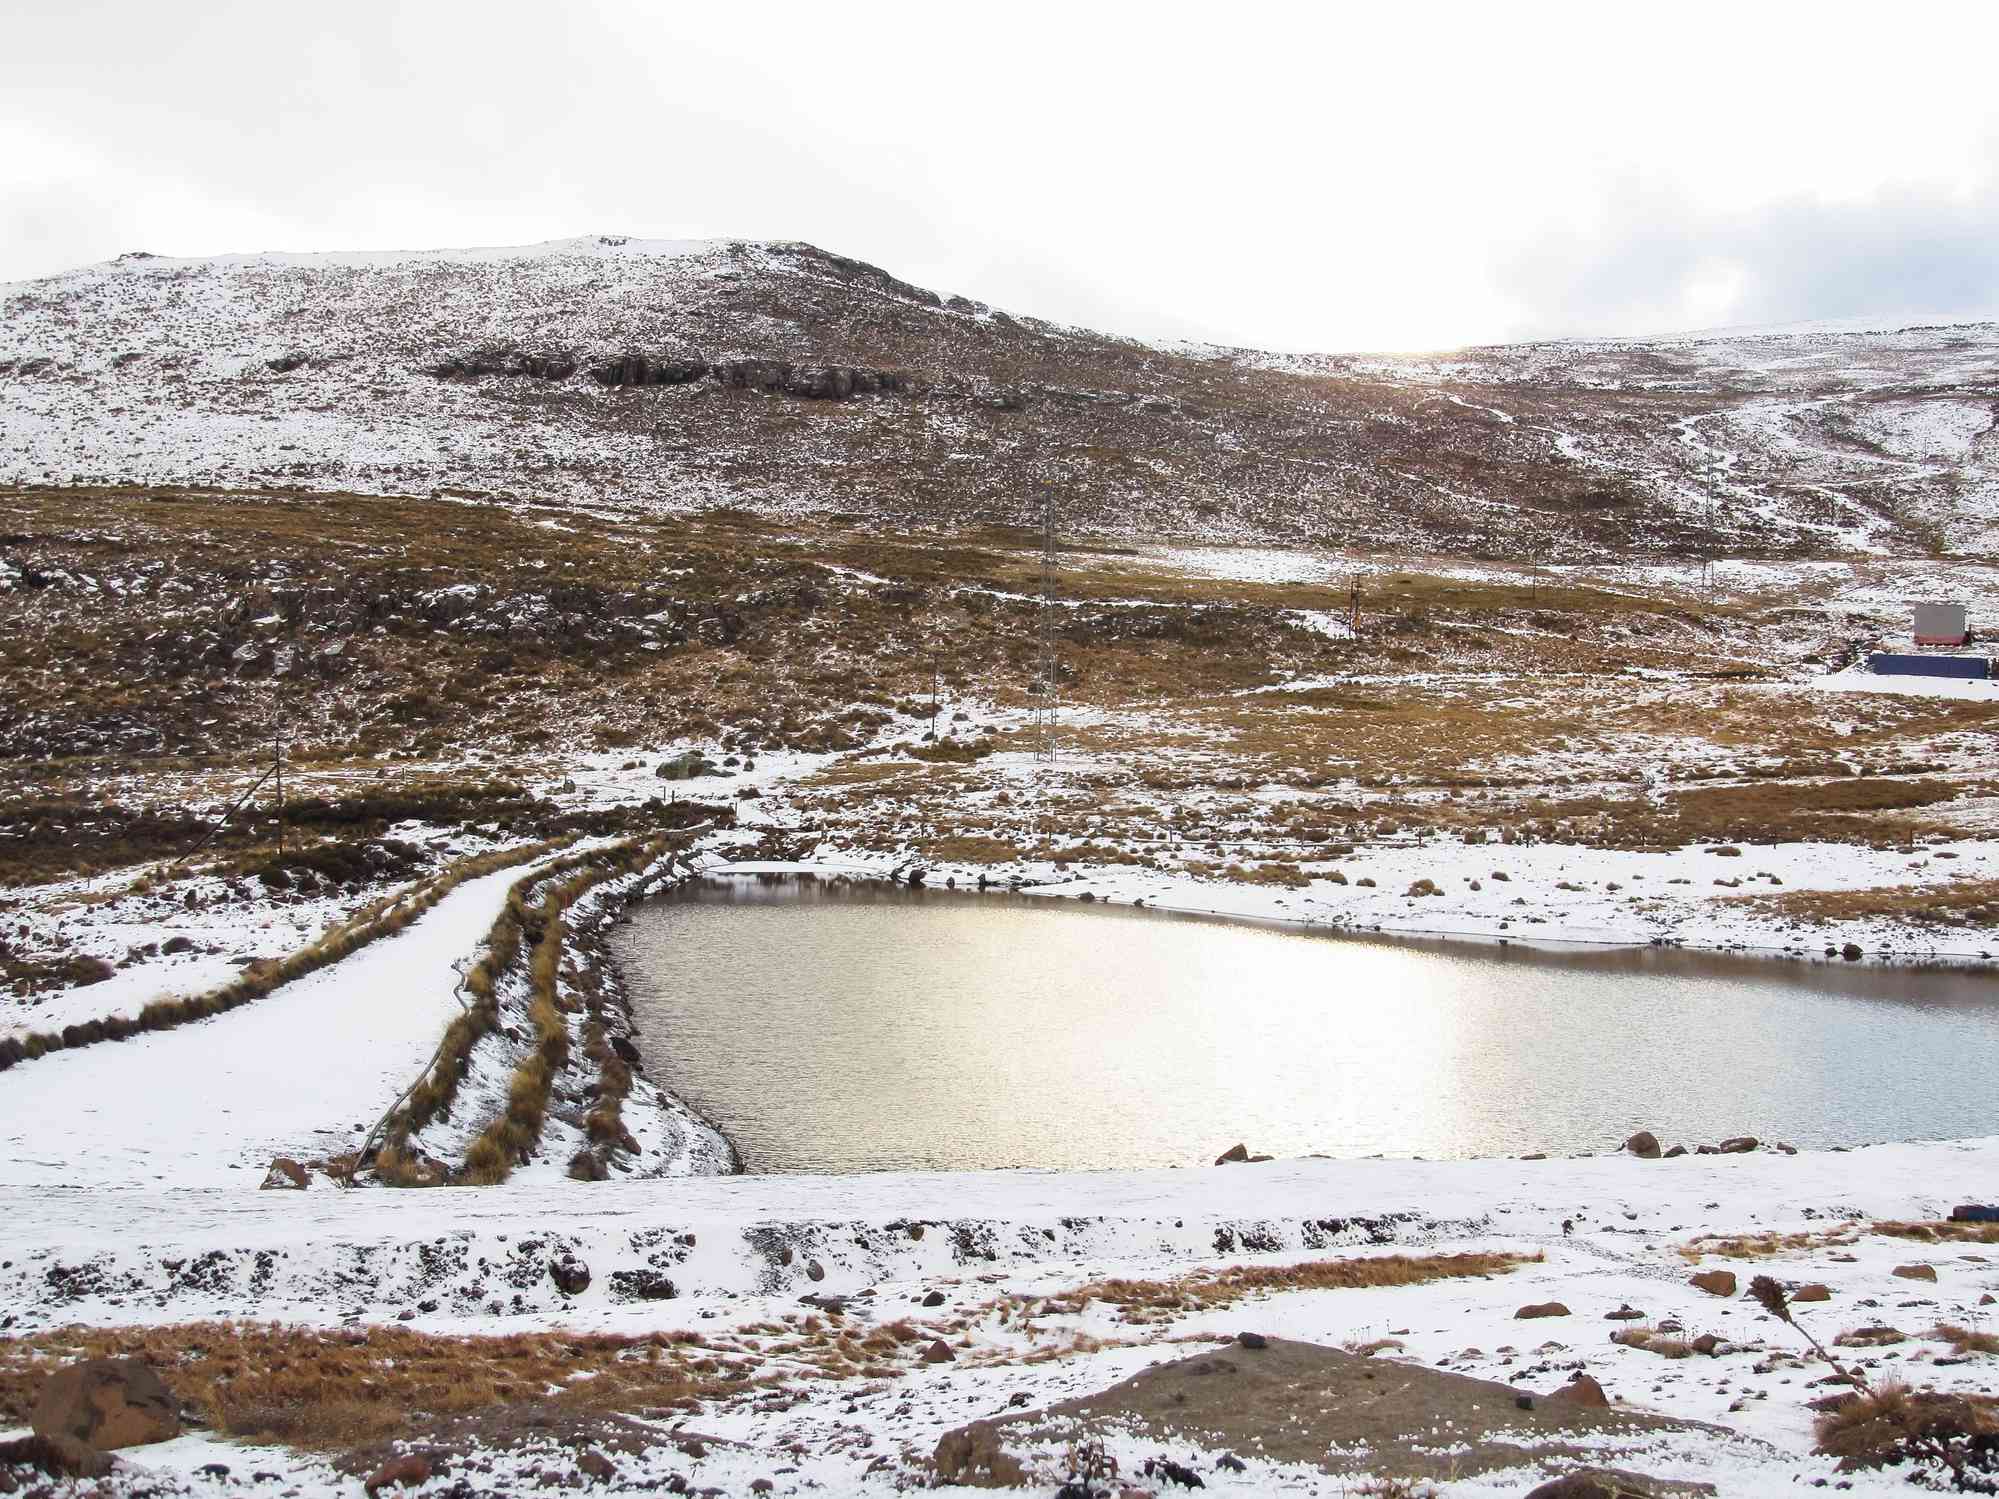 Vista de las montañas de Maluti ligeramente cubiertas de nieve, con partes del marrón crecido por debajo mostrando un lago en el centro durante la temporada de invierno en Lesotho.